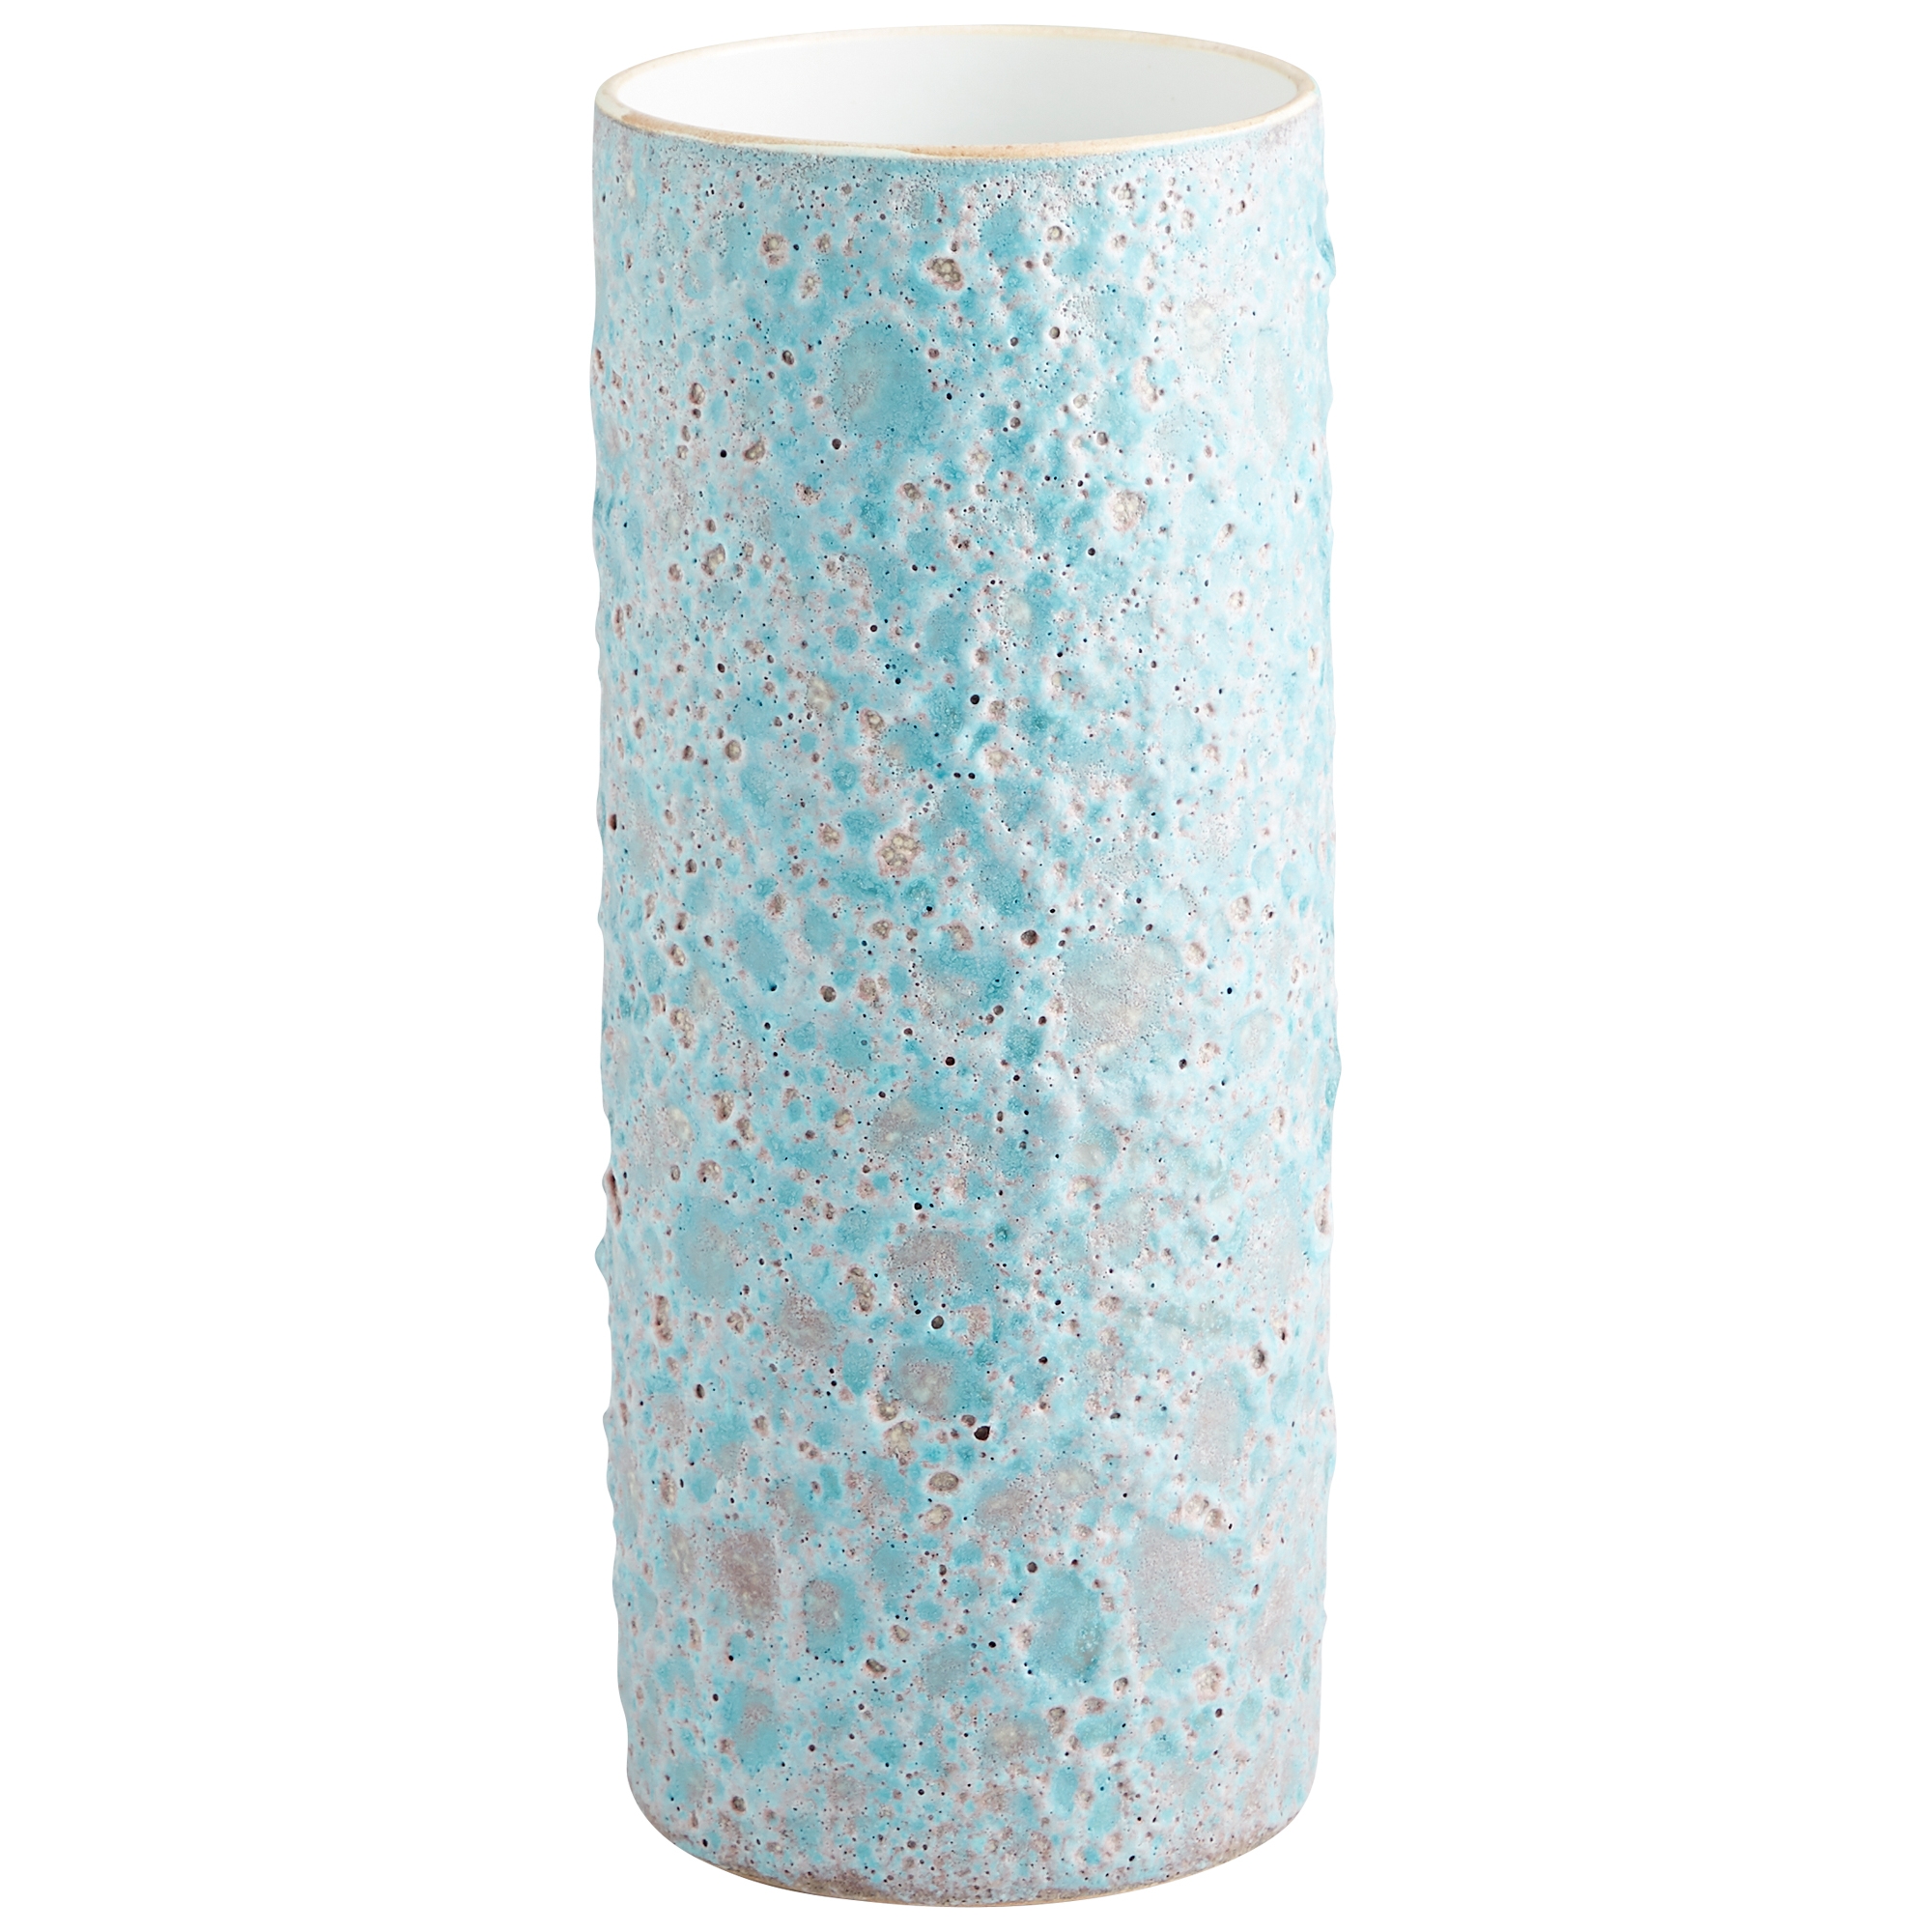 Sumba Vase - Image 0